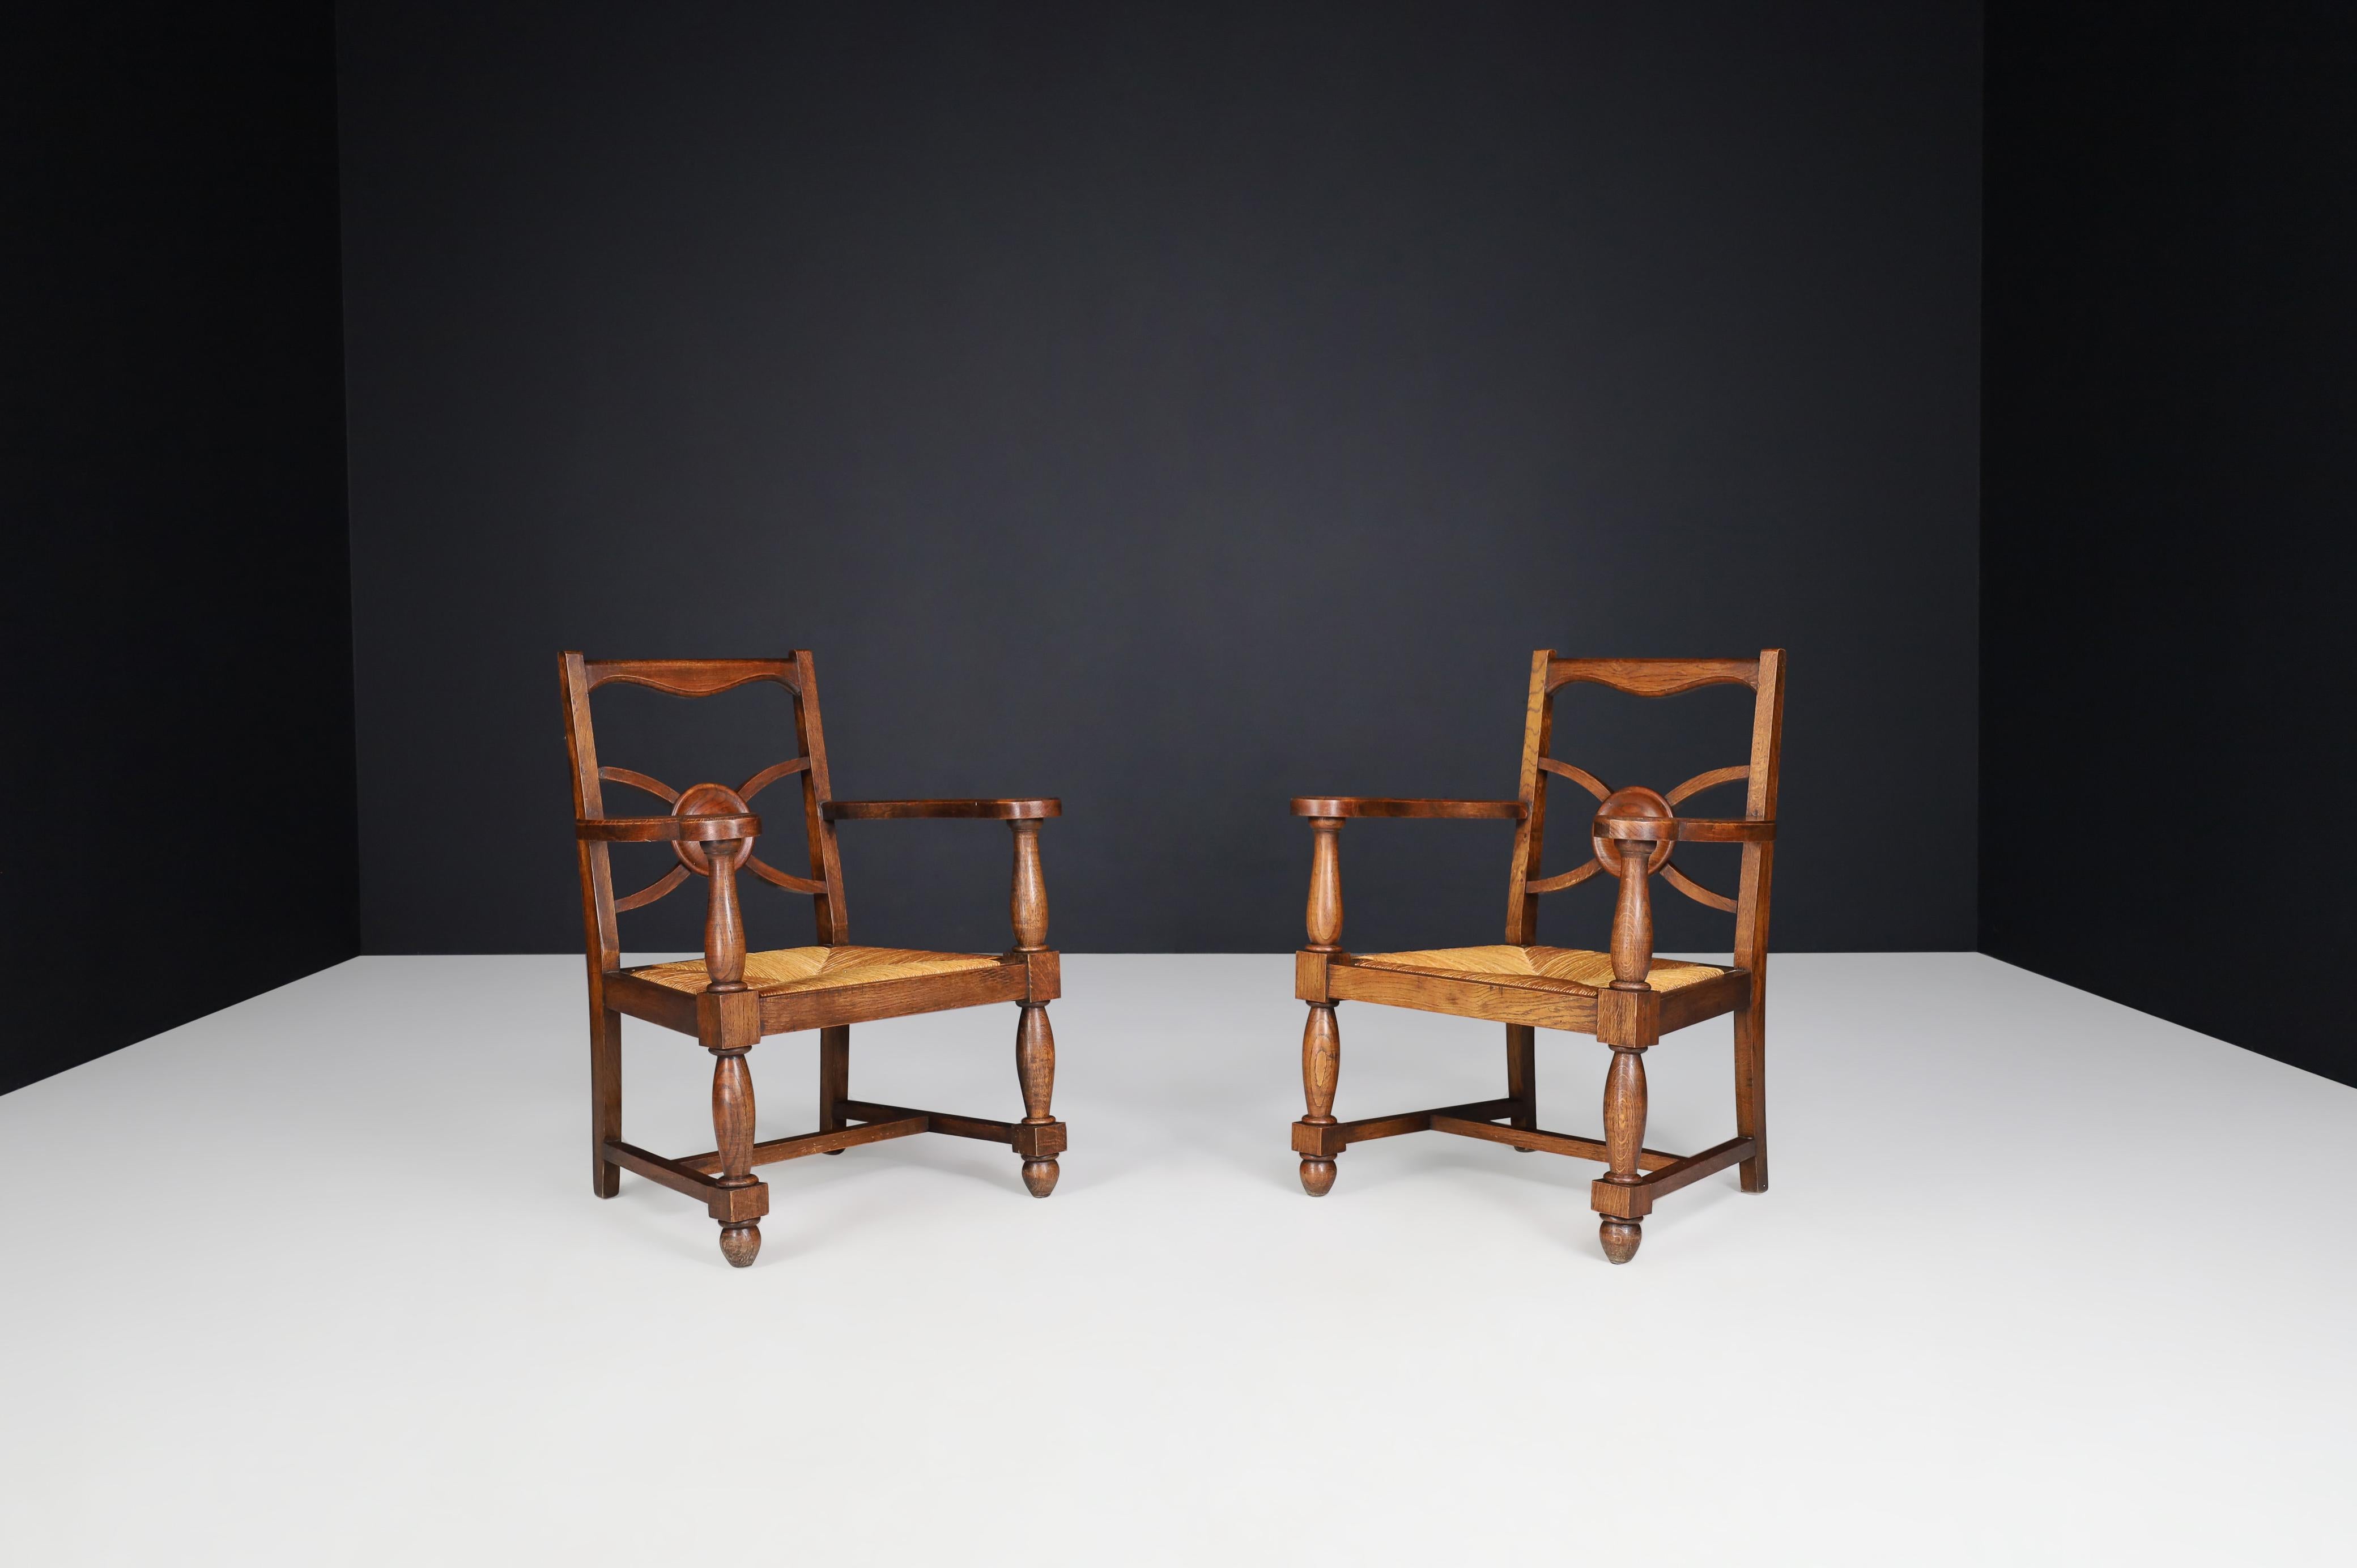 Art Deco Sessel aus Eiche und Binsen, Frankreich 1930er Jahre.

Diese prächtigen Art-Deco-Sessel wurden um 1930 in Frankreich hergestellt. Fantastisch guter Originalzustand mit einer schönen Patina. Diese Stühle sind ein echter Blickfang für jedes